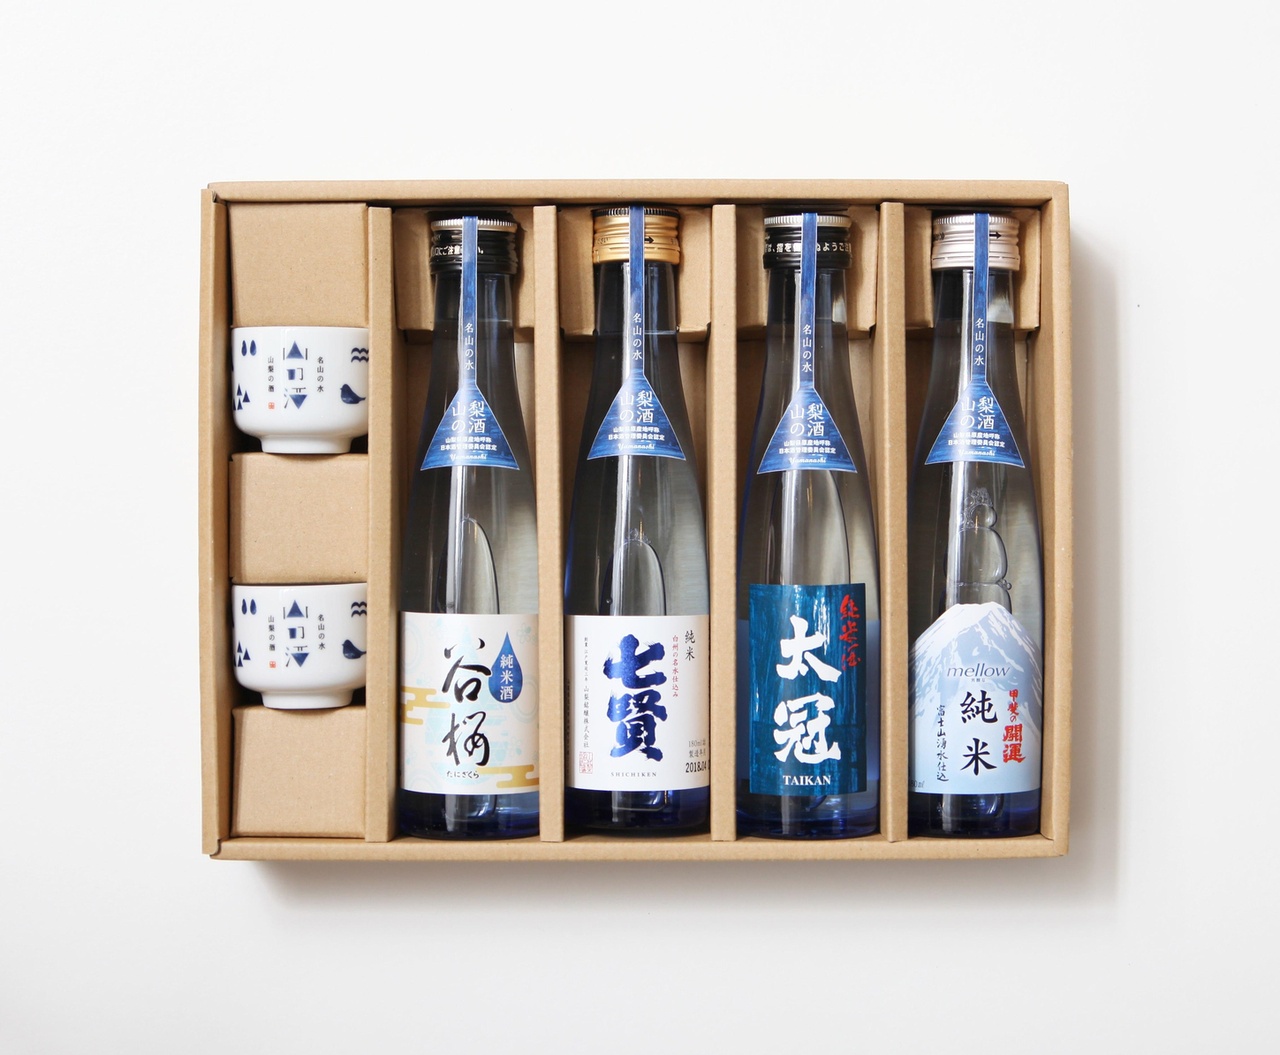 日本山梨縣四面環山，其中在富士山的環繞下，標高 2,000至3,000m，擁有豐富的水資源。山梨風味富饒的產酒，正是以在「名山」所孕育出的「名水」而釀造的產物。